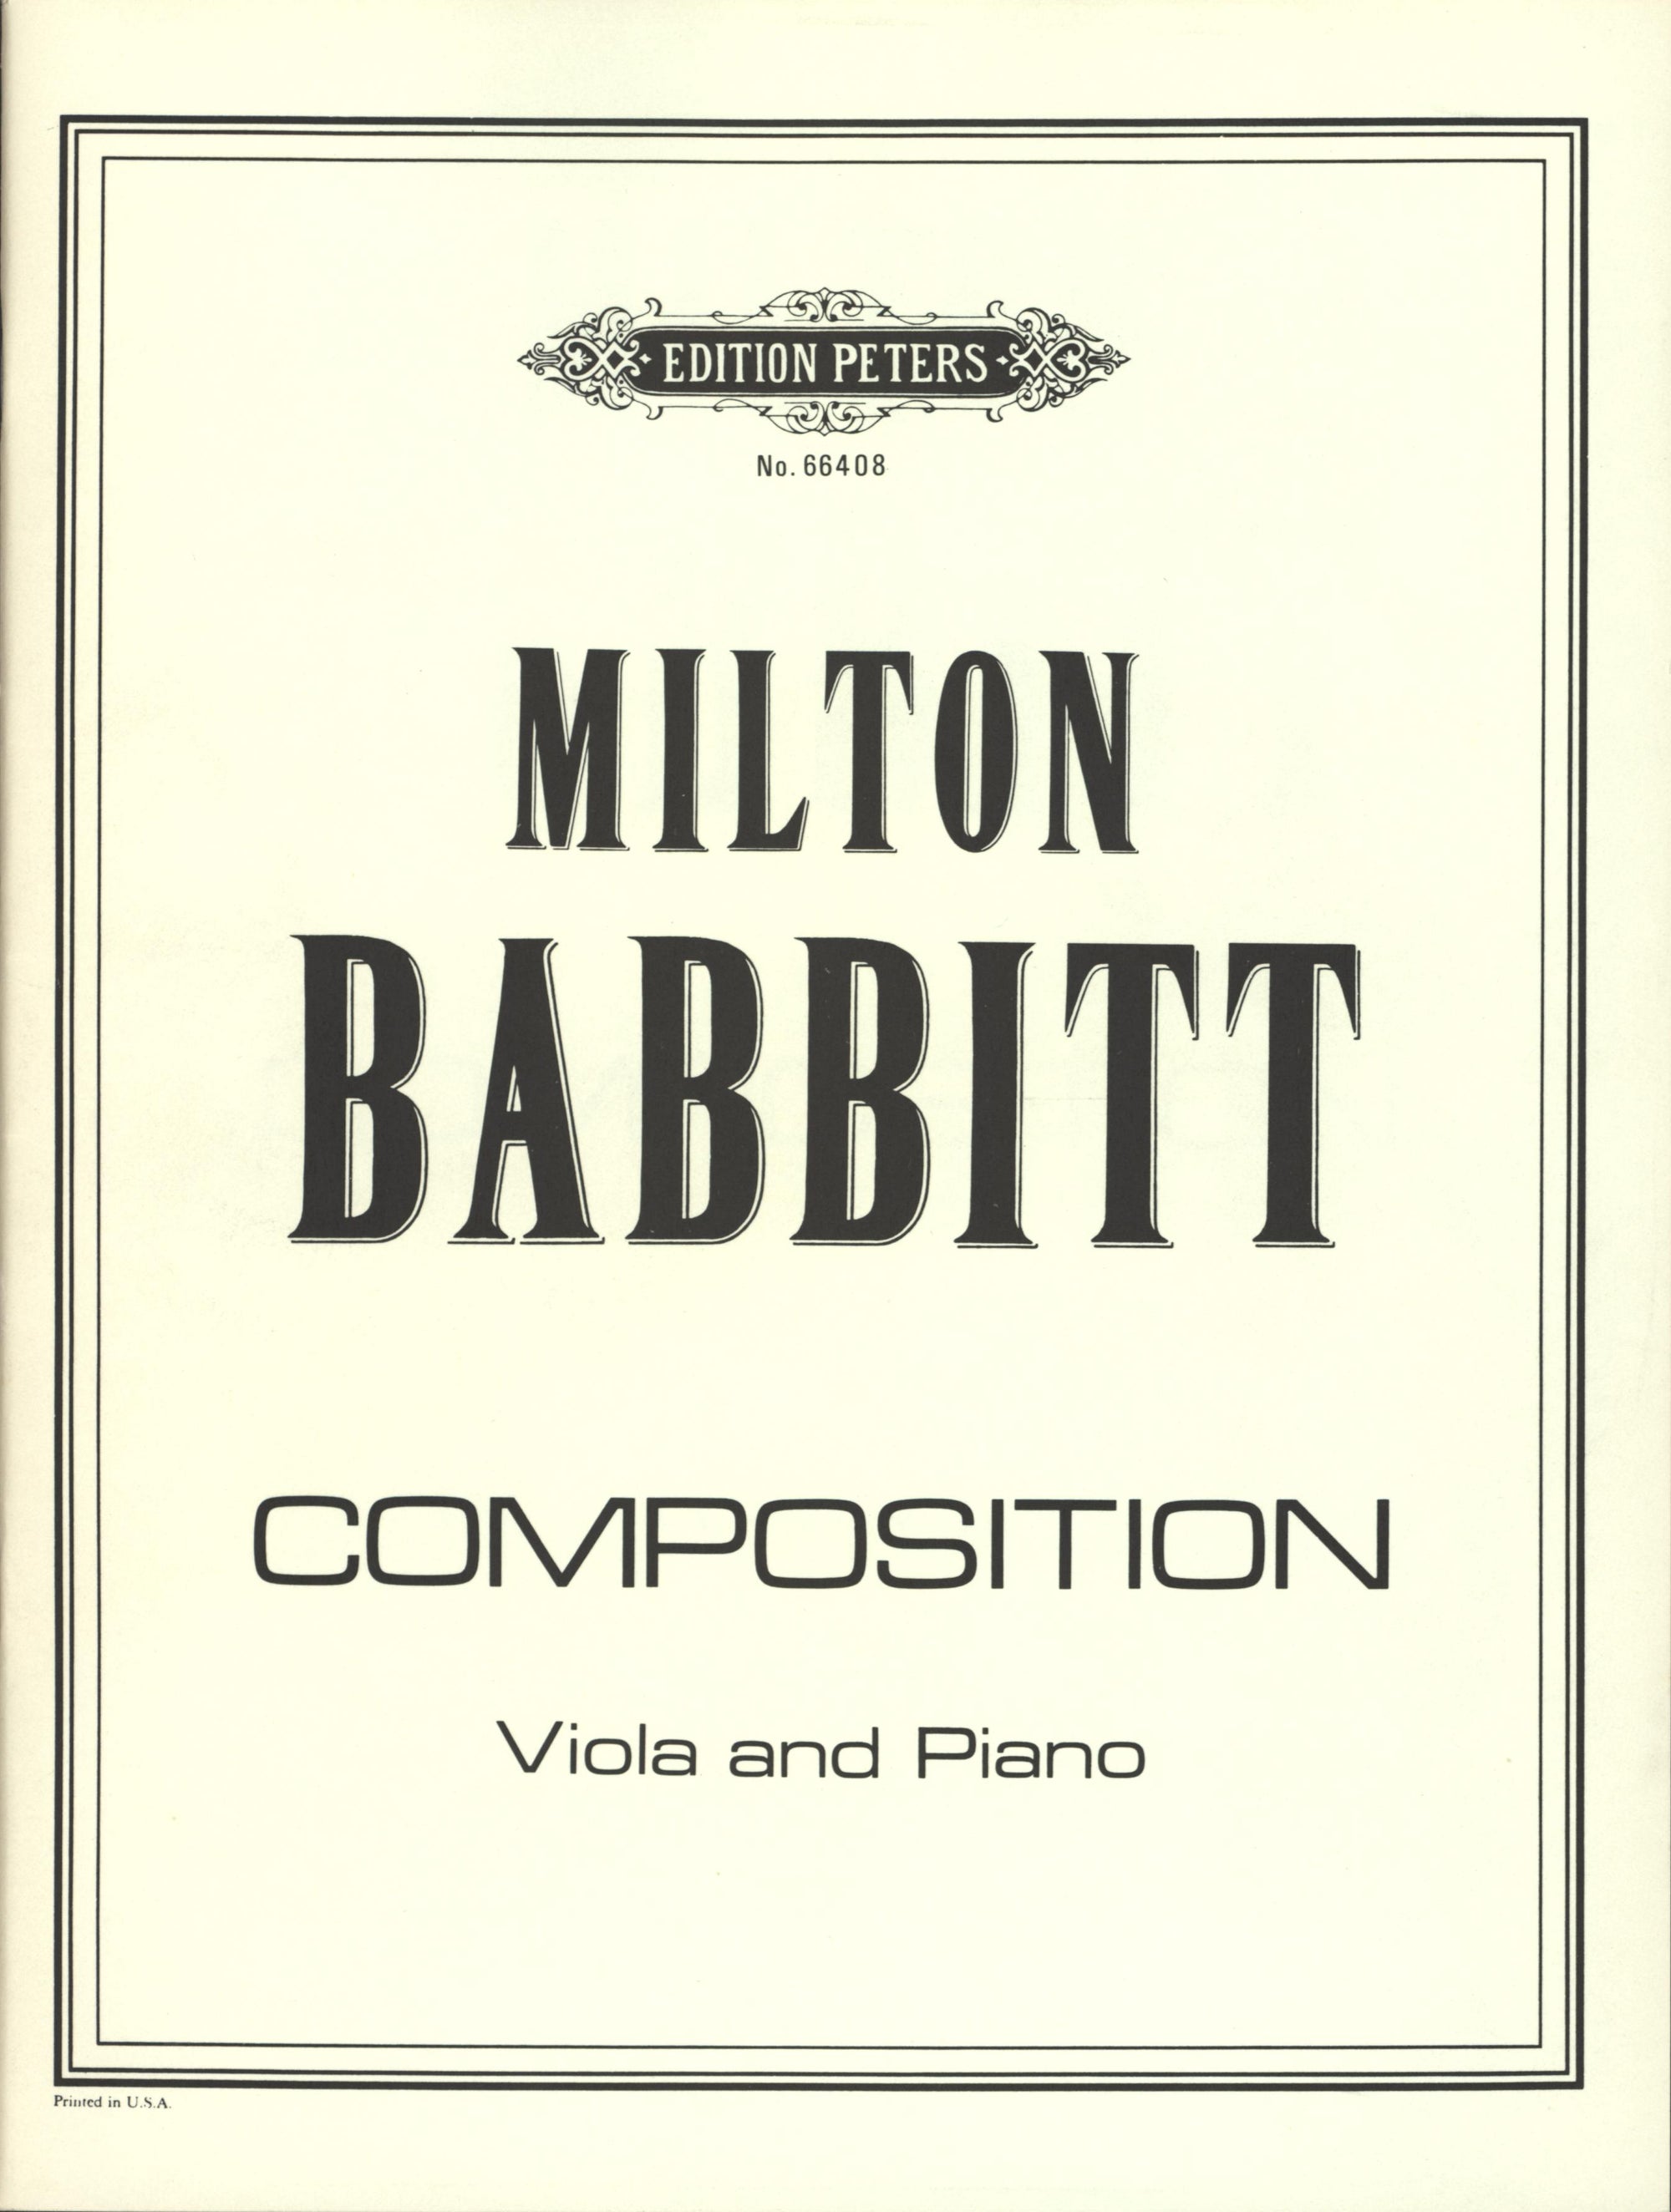 Babbitt: Composition